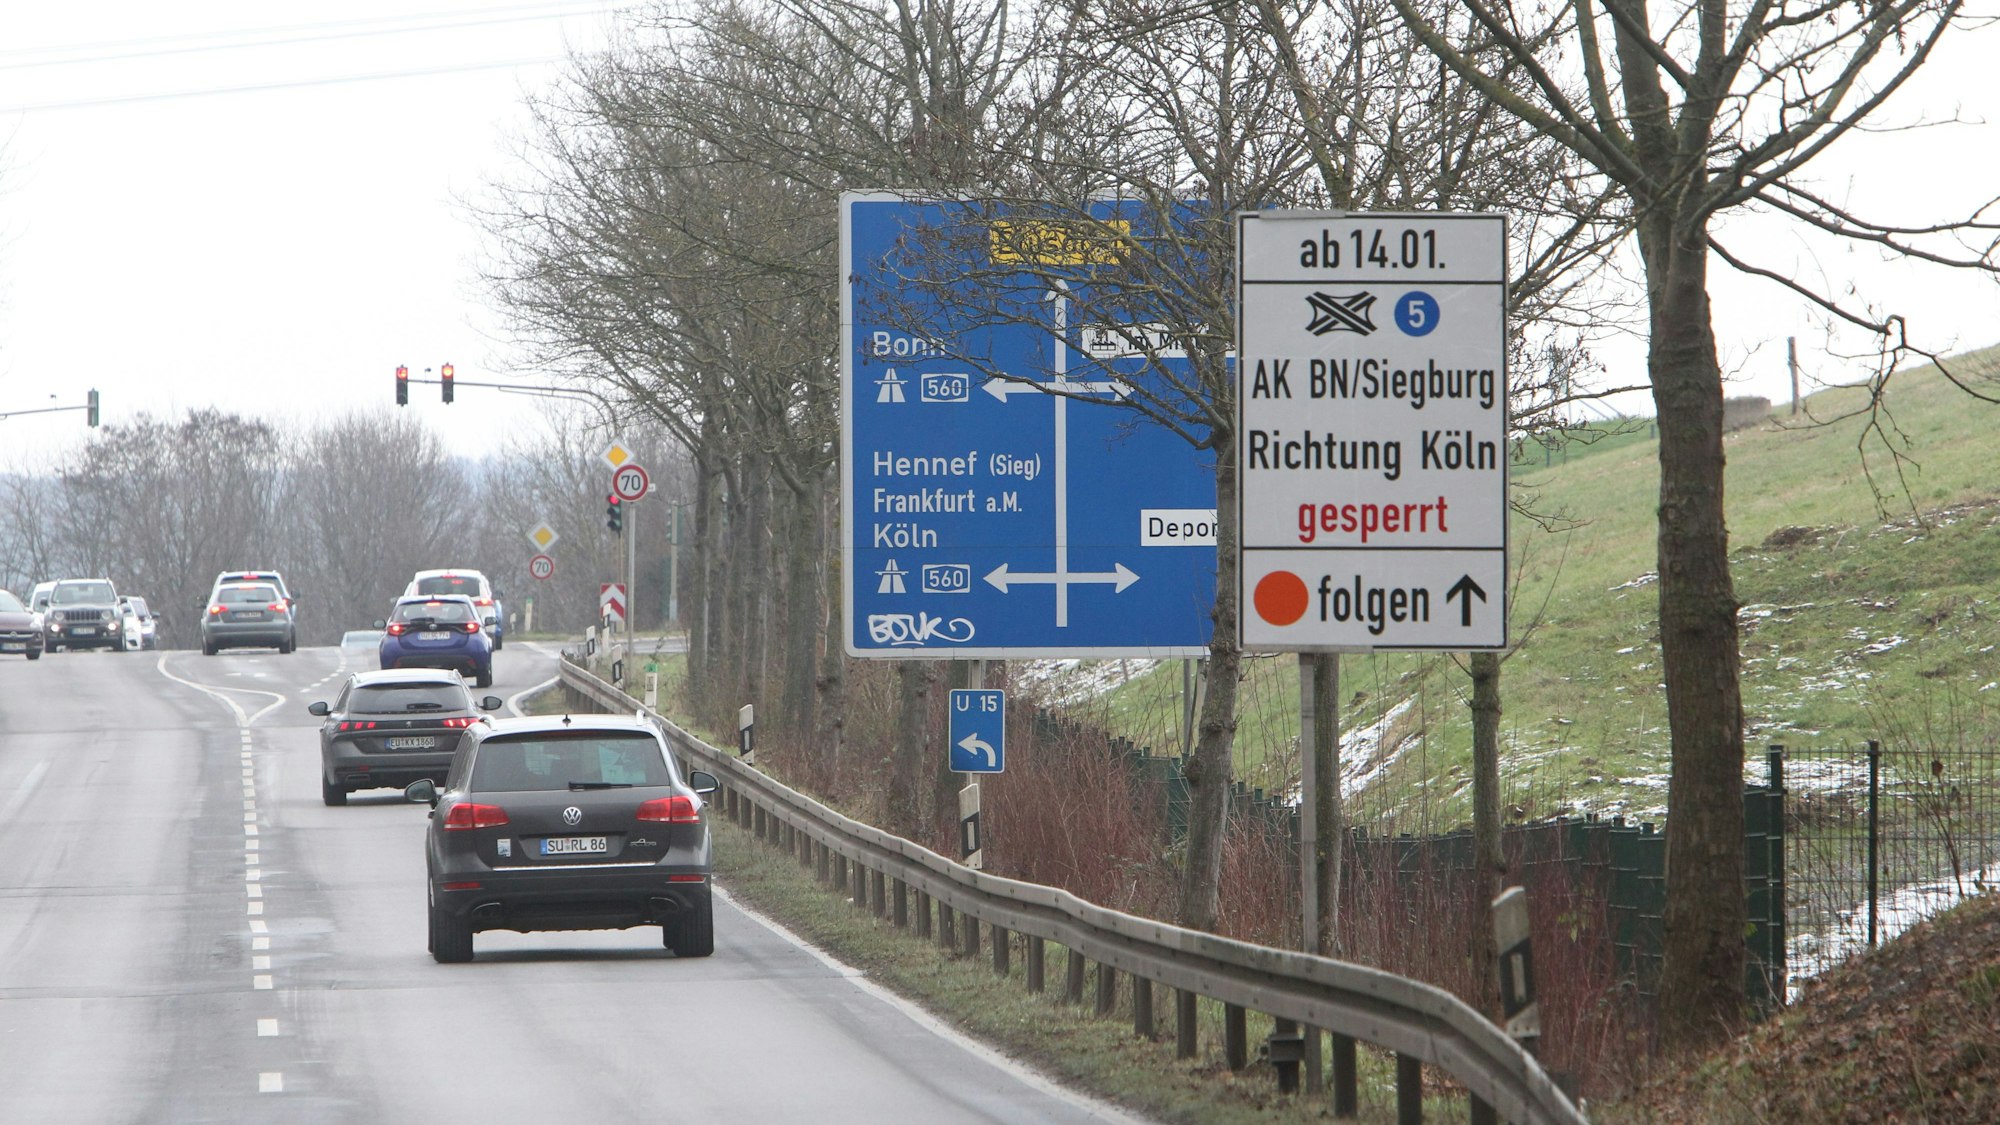 Autobahn A3 A560 Situation an der Auffahrt zur A 560 in Niederpleis/Buisdorf wo ein zusätzliches weißes Schild von beiden Seiten aufgestellt worden ist. Von Niederpleis kommend sieht man das Schild inklusive des blauben Autobahnschild. Von Buisdorf kommend sieht man das nicht. 